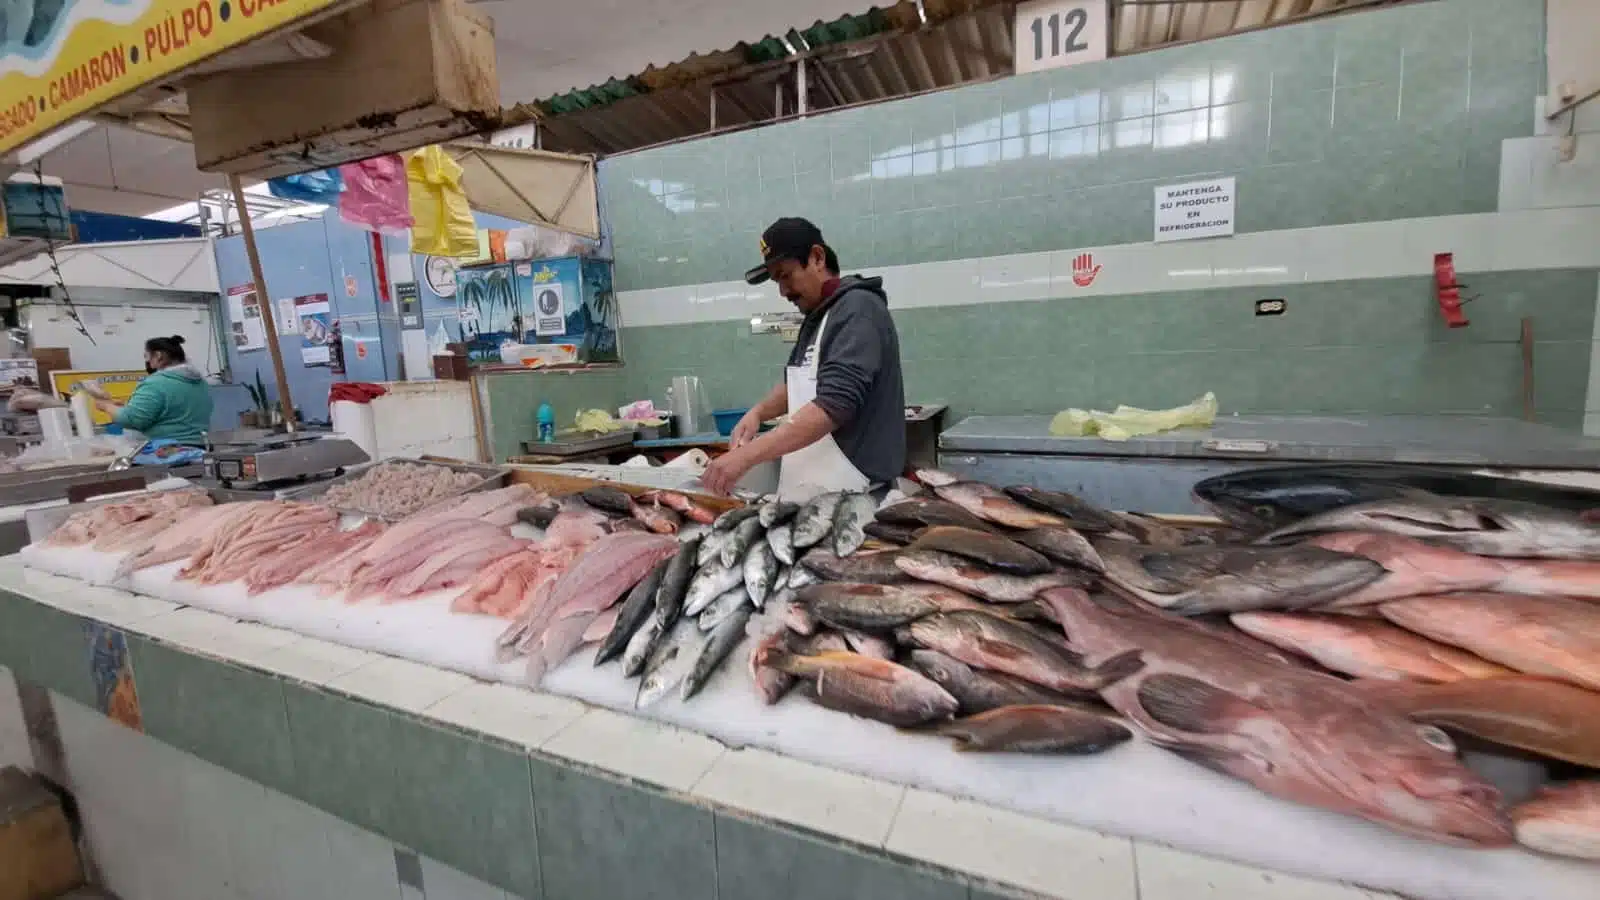 Profeco lanzó una serie de recomendaciones útiles para garantizar una compra segura y consciente de pescados y mariscos.